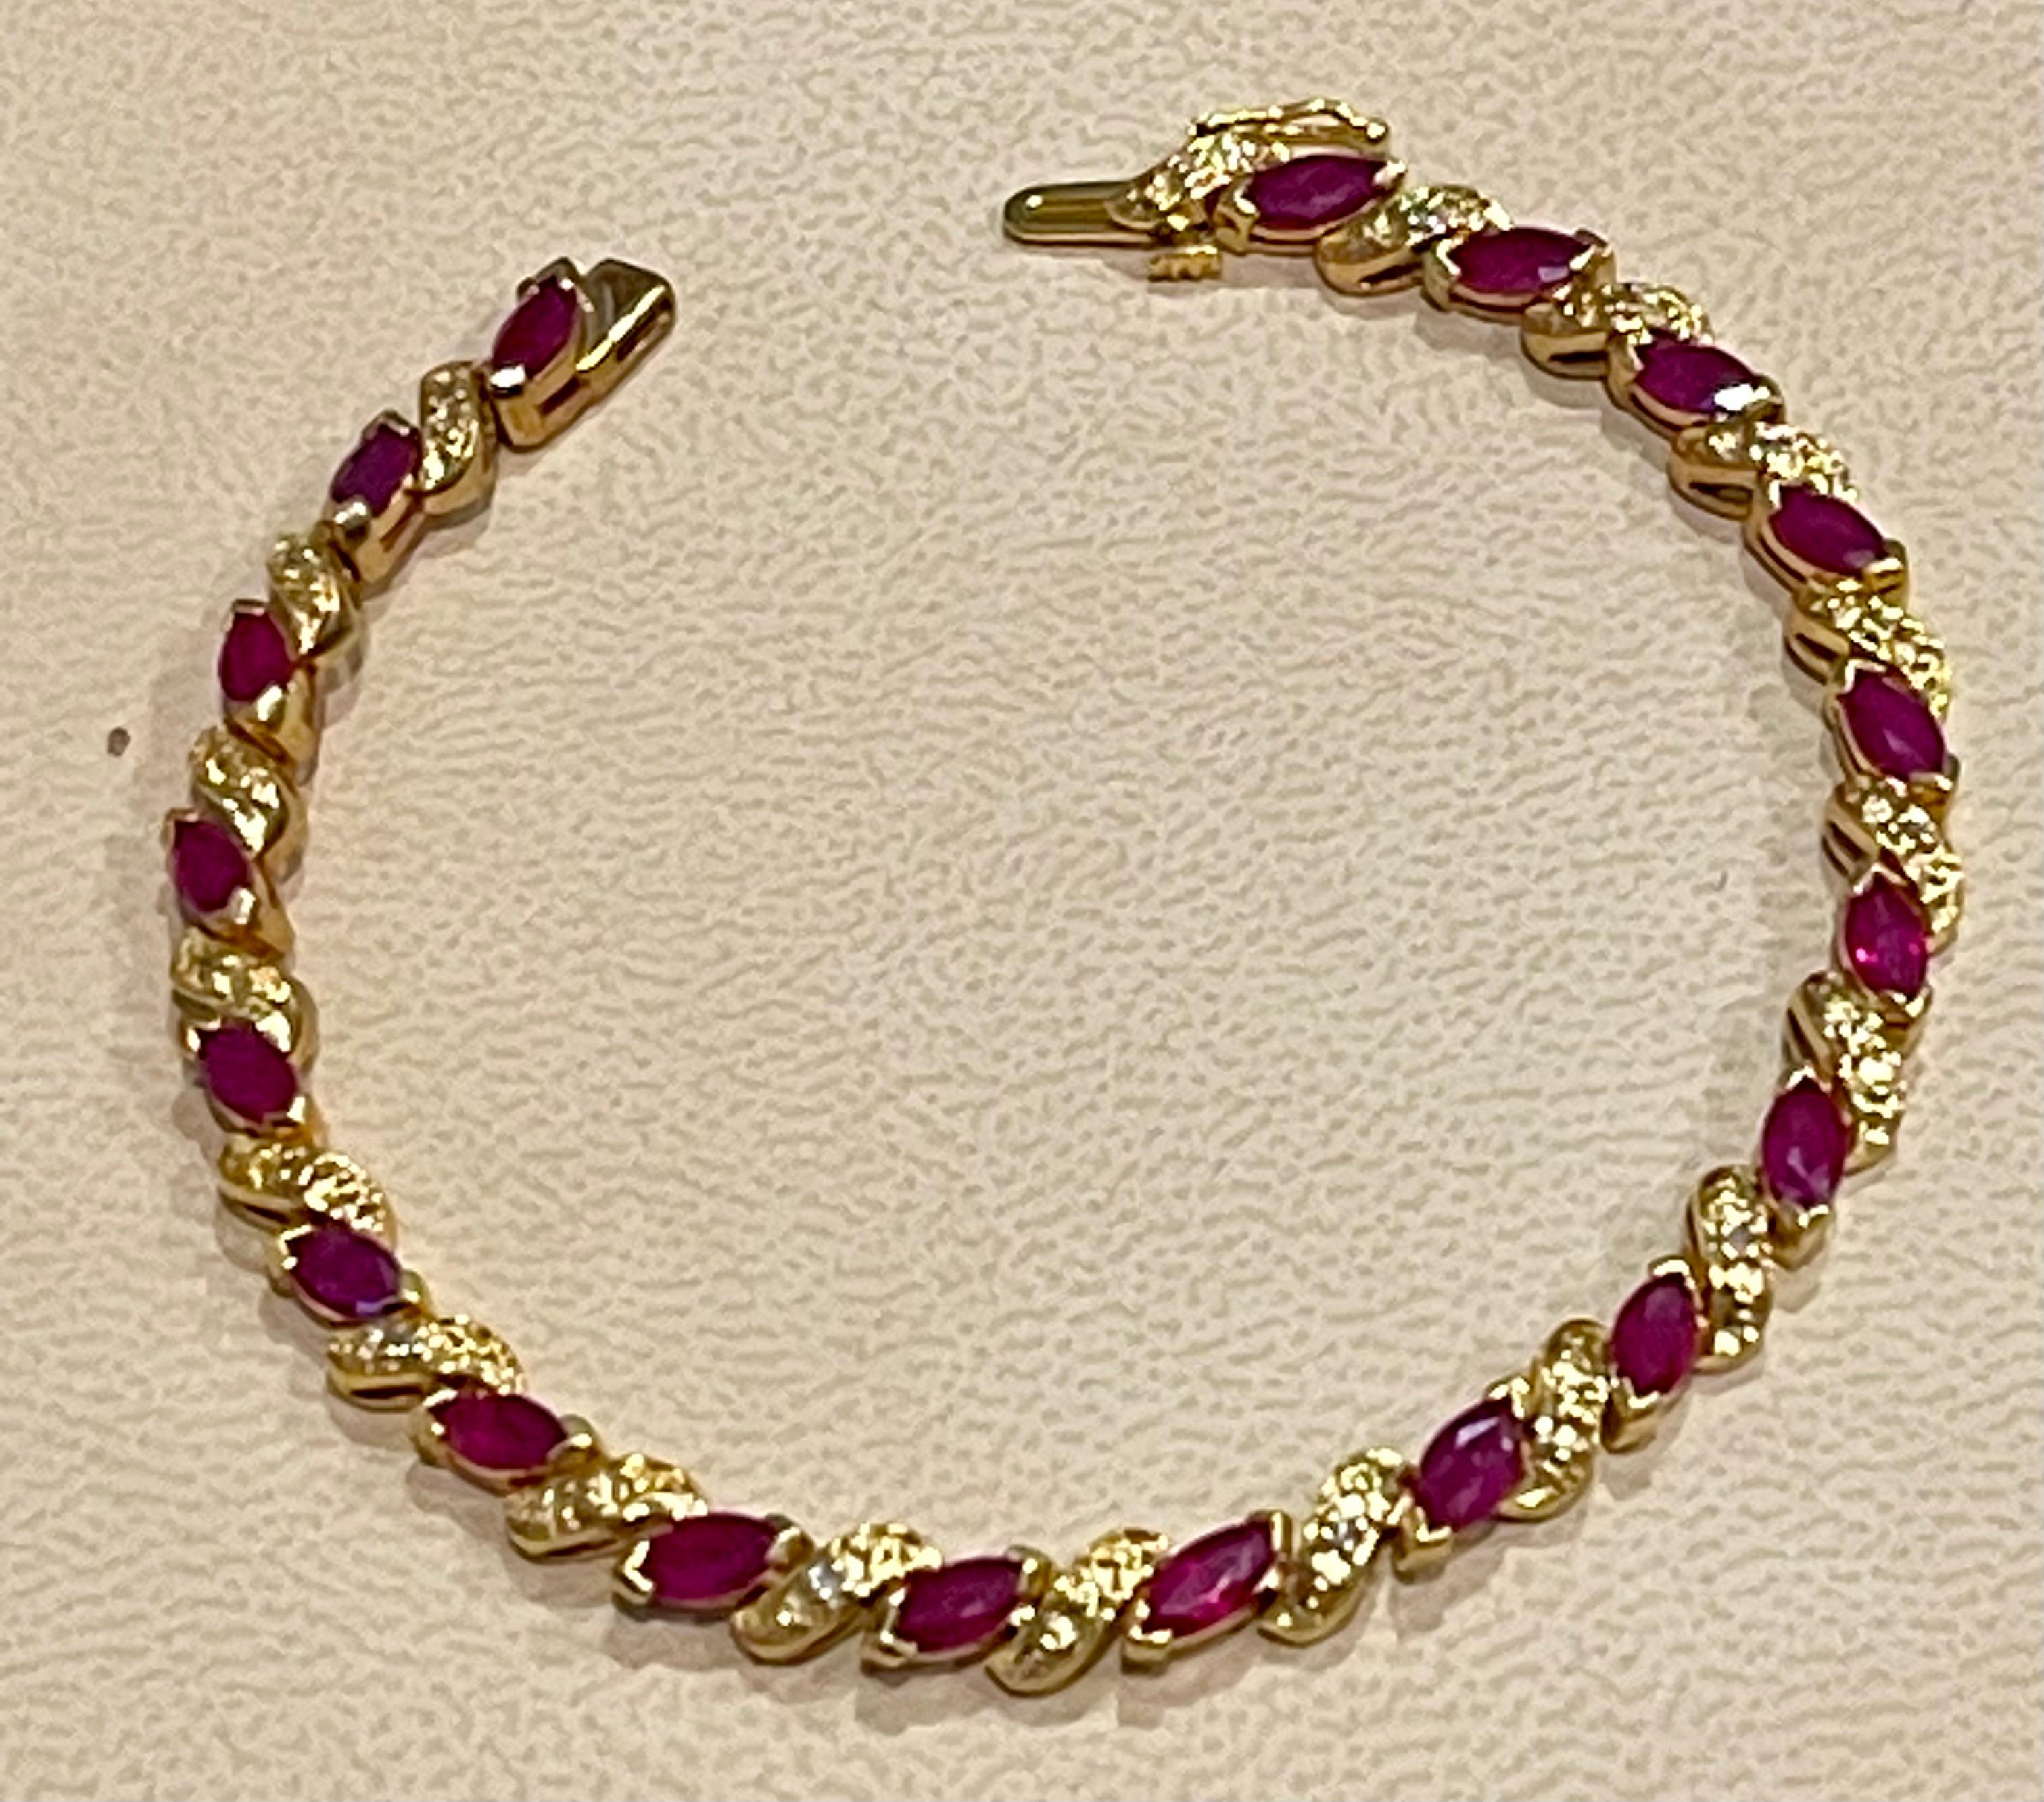  Ce bracelet présente une coupe marquise  Rubis en or jaune 14k.
 sertis, magnifiquement complétés par des maillons en or scintillants en forme de S
 Ensemble, ces éléments rendent ce bracelet magnifique. . Ce sont des rubis naturels
 Ils ont une